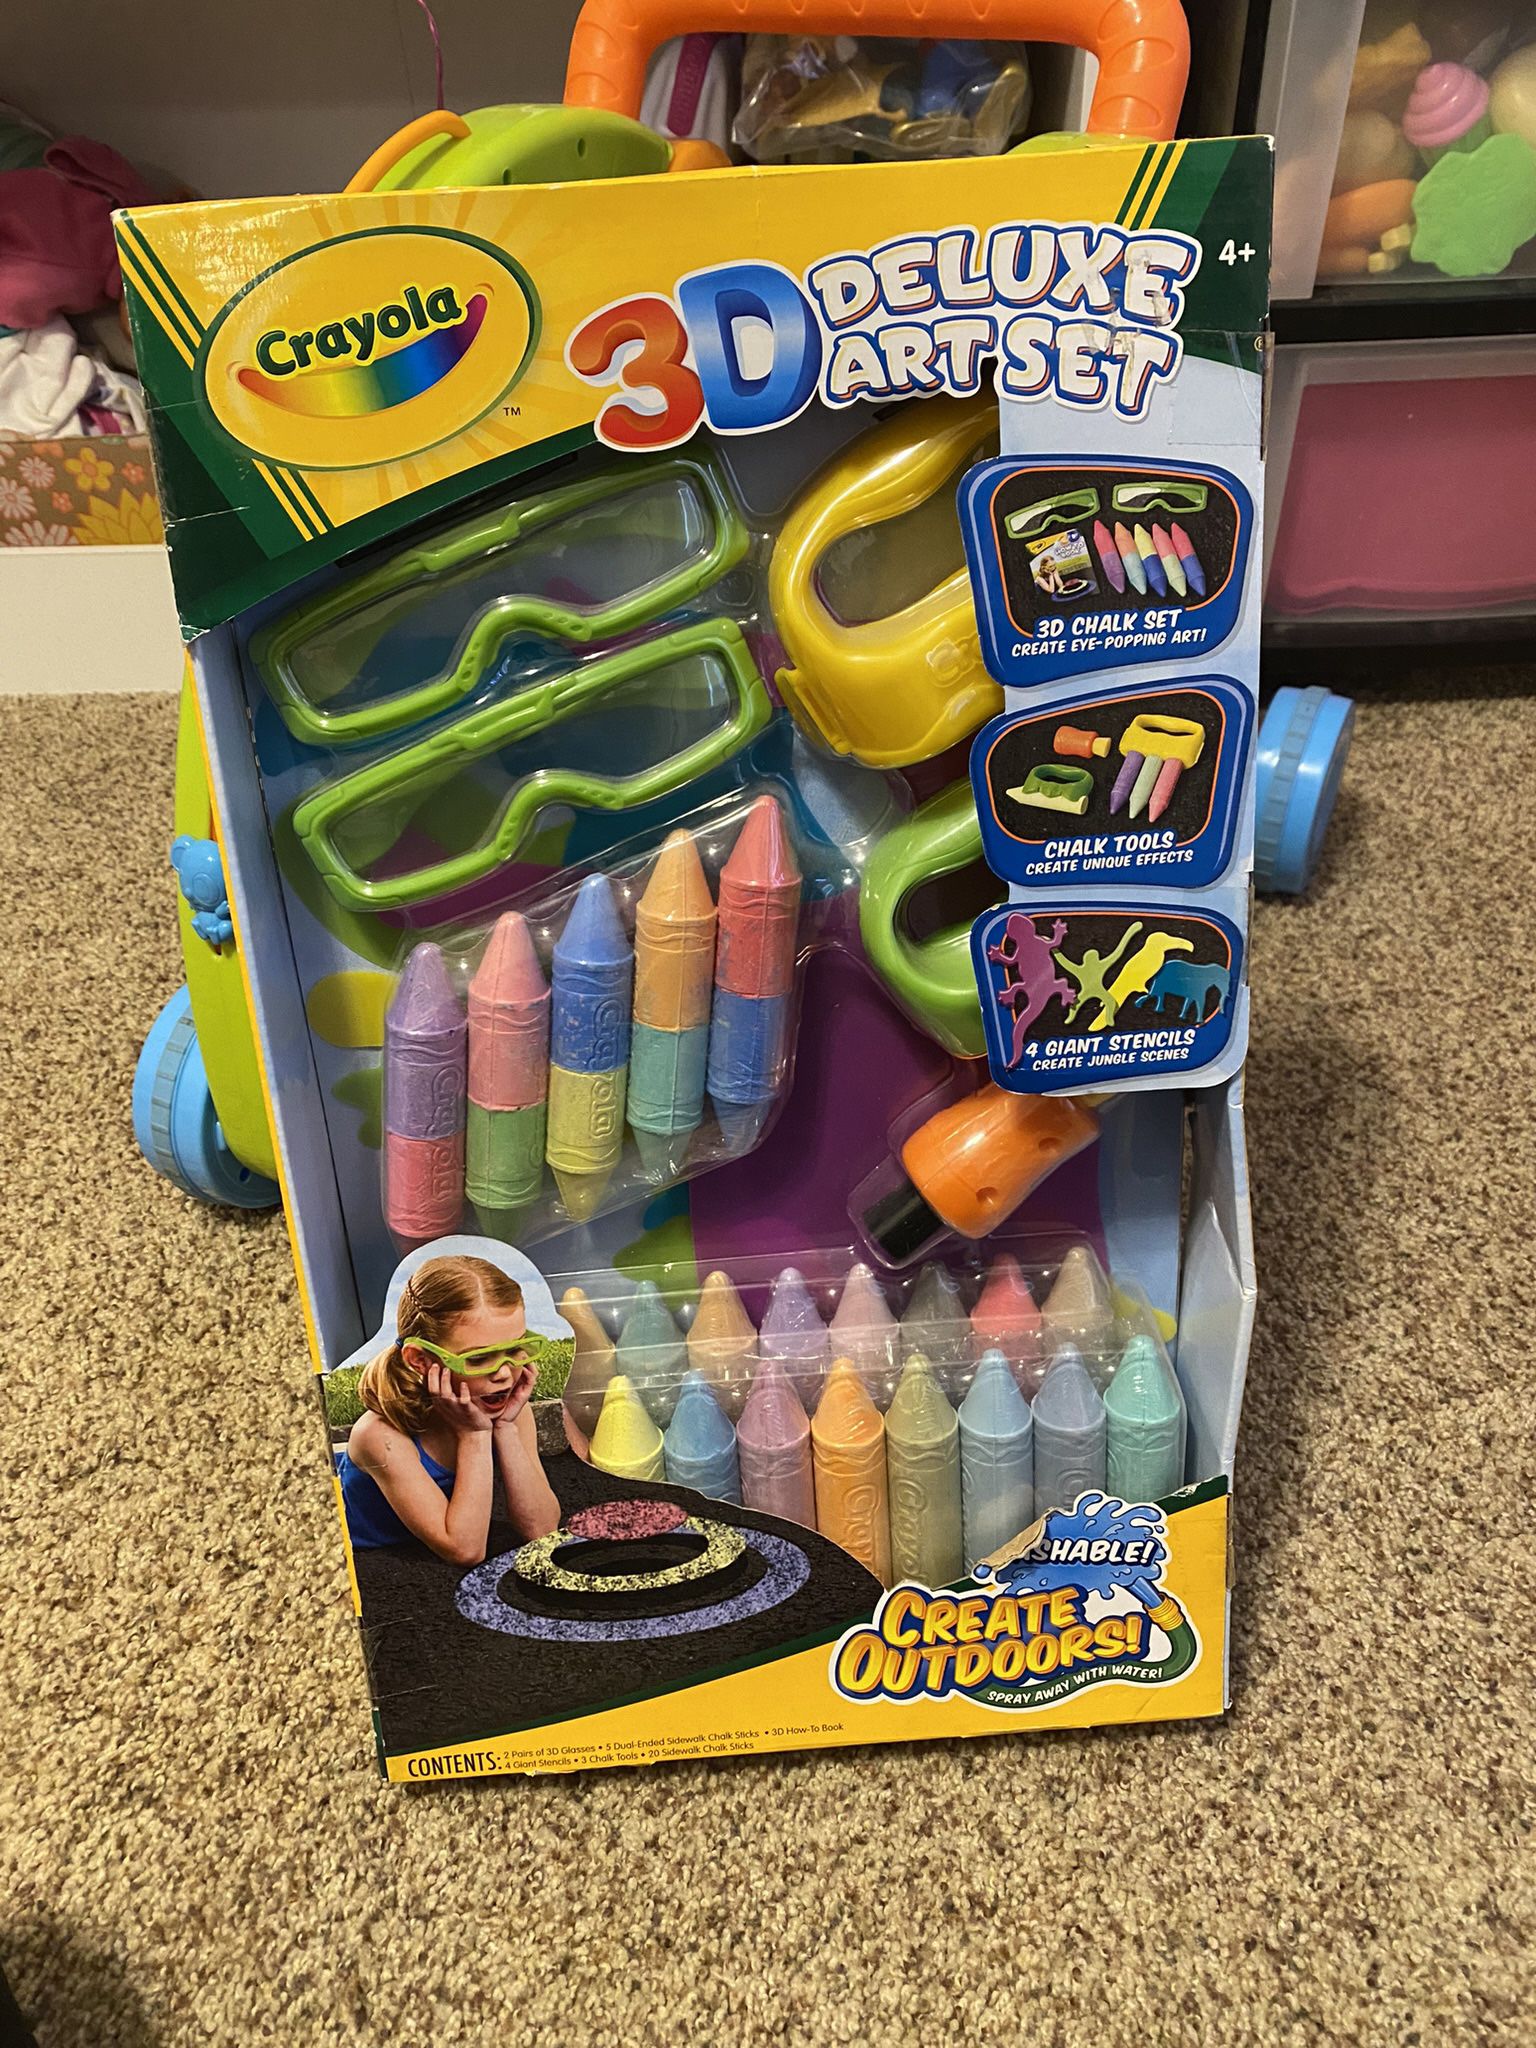 Crayola 3D Deluxe Art Set for $12.99